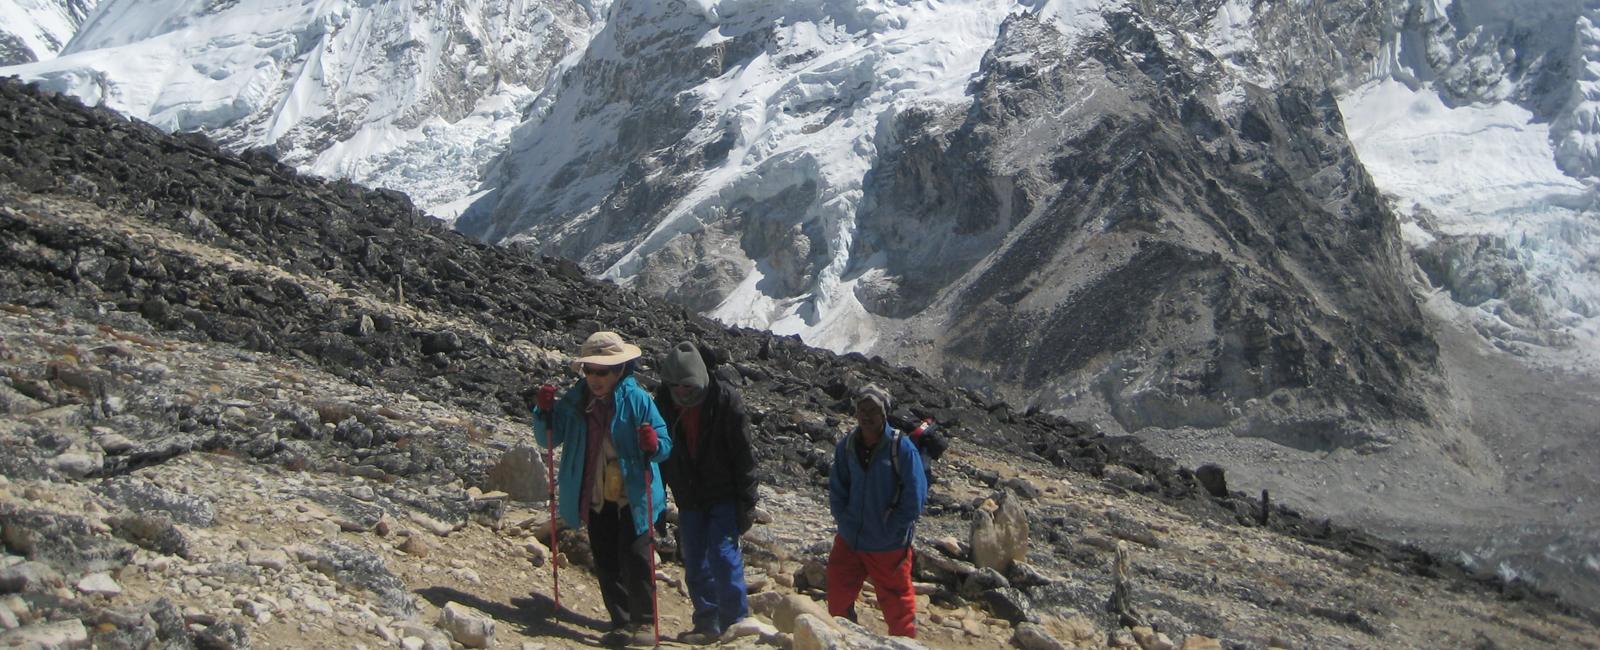 Everest base camp trek return by helicopter